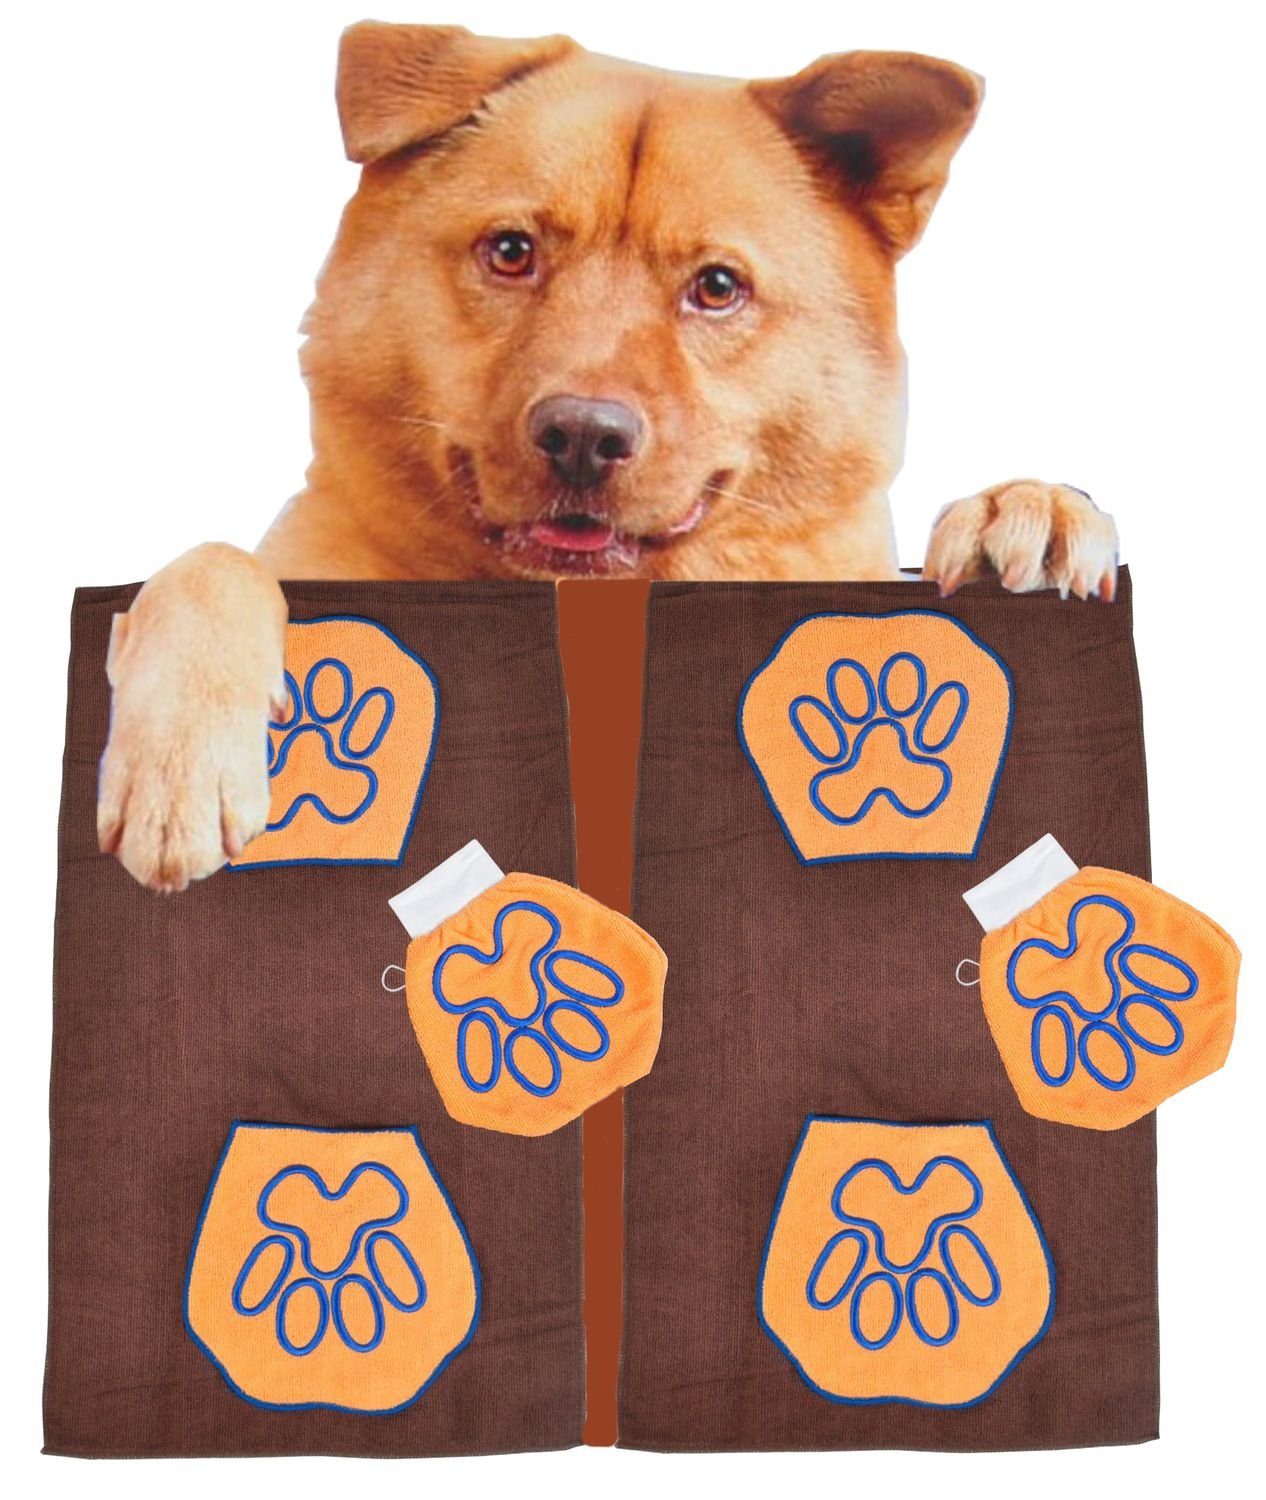 BURI Putzhandschuh 2x Hundepflegeset aus mit Microfaser Waschhandschuh + Hundehandtuch wa